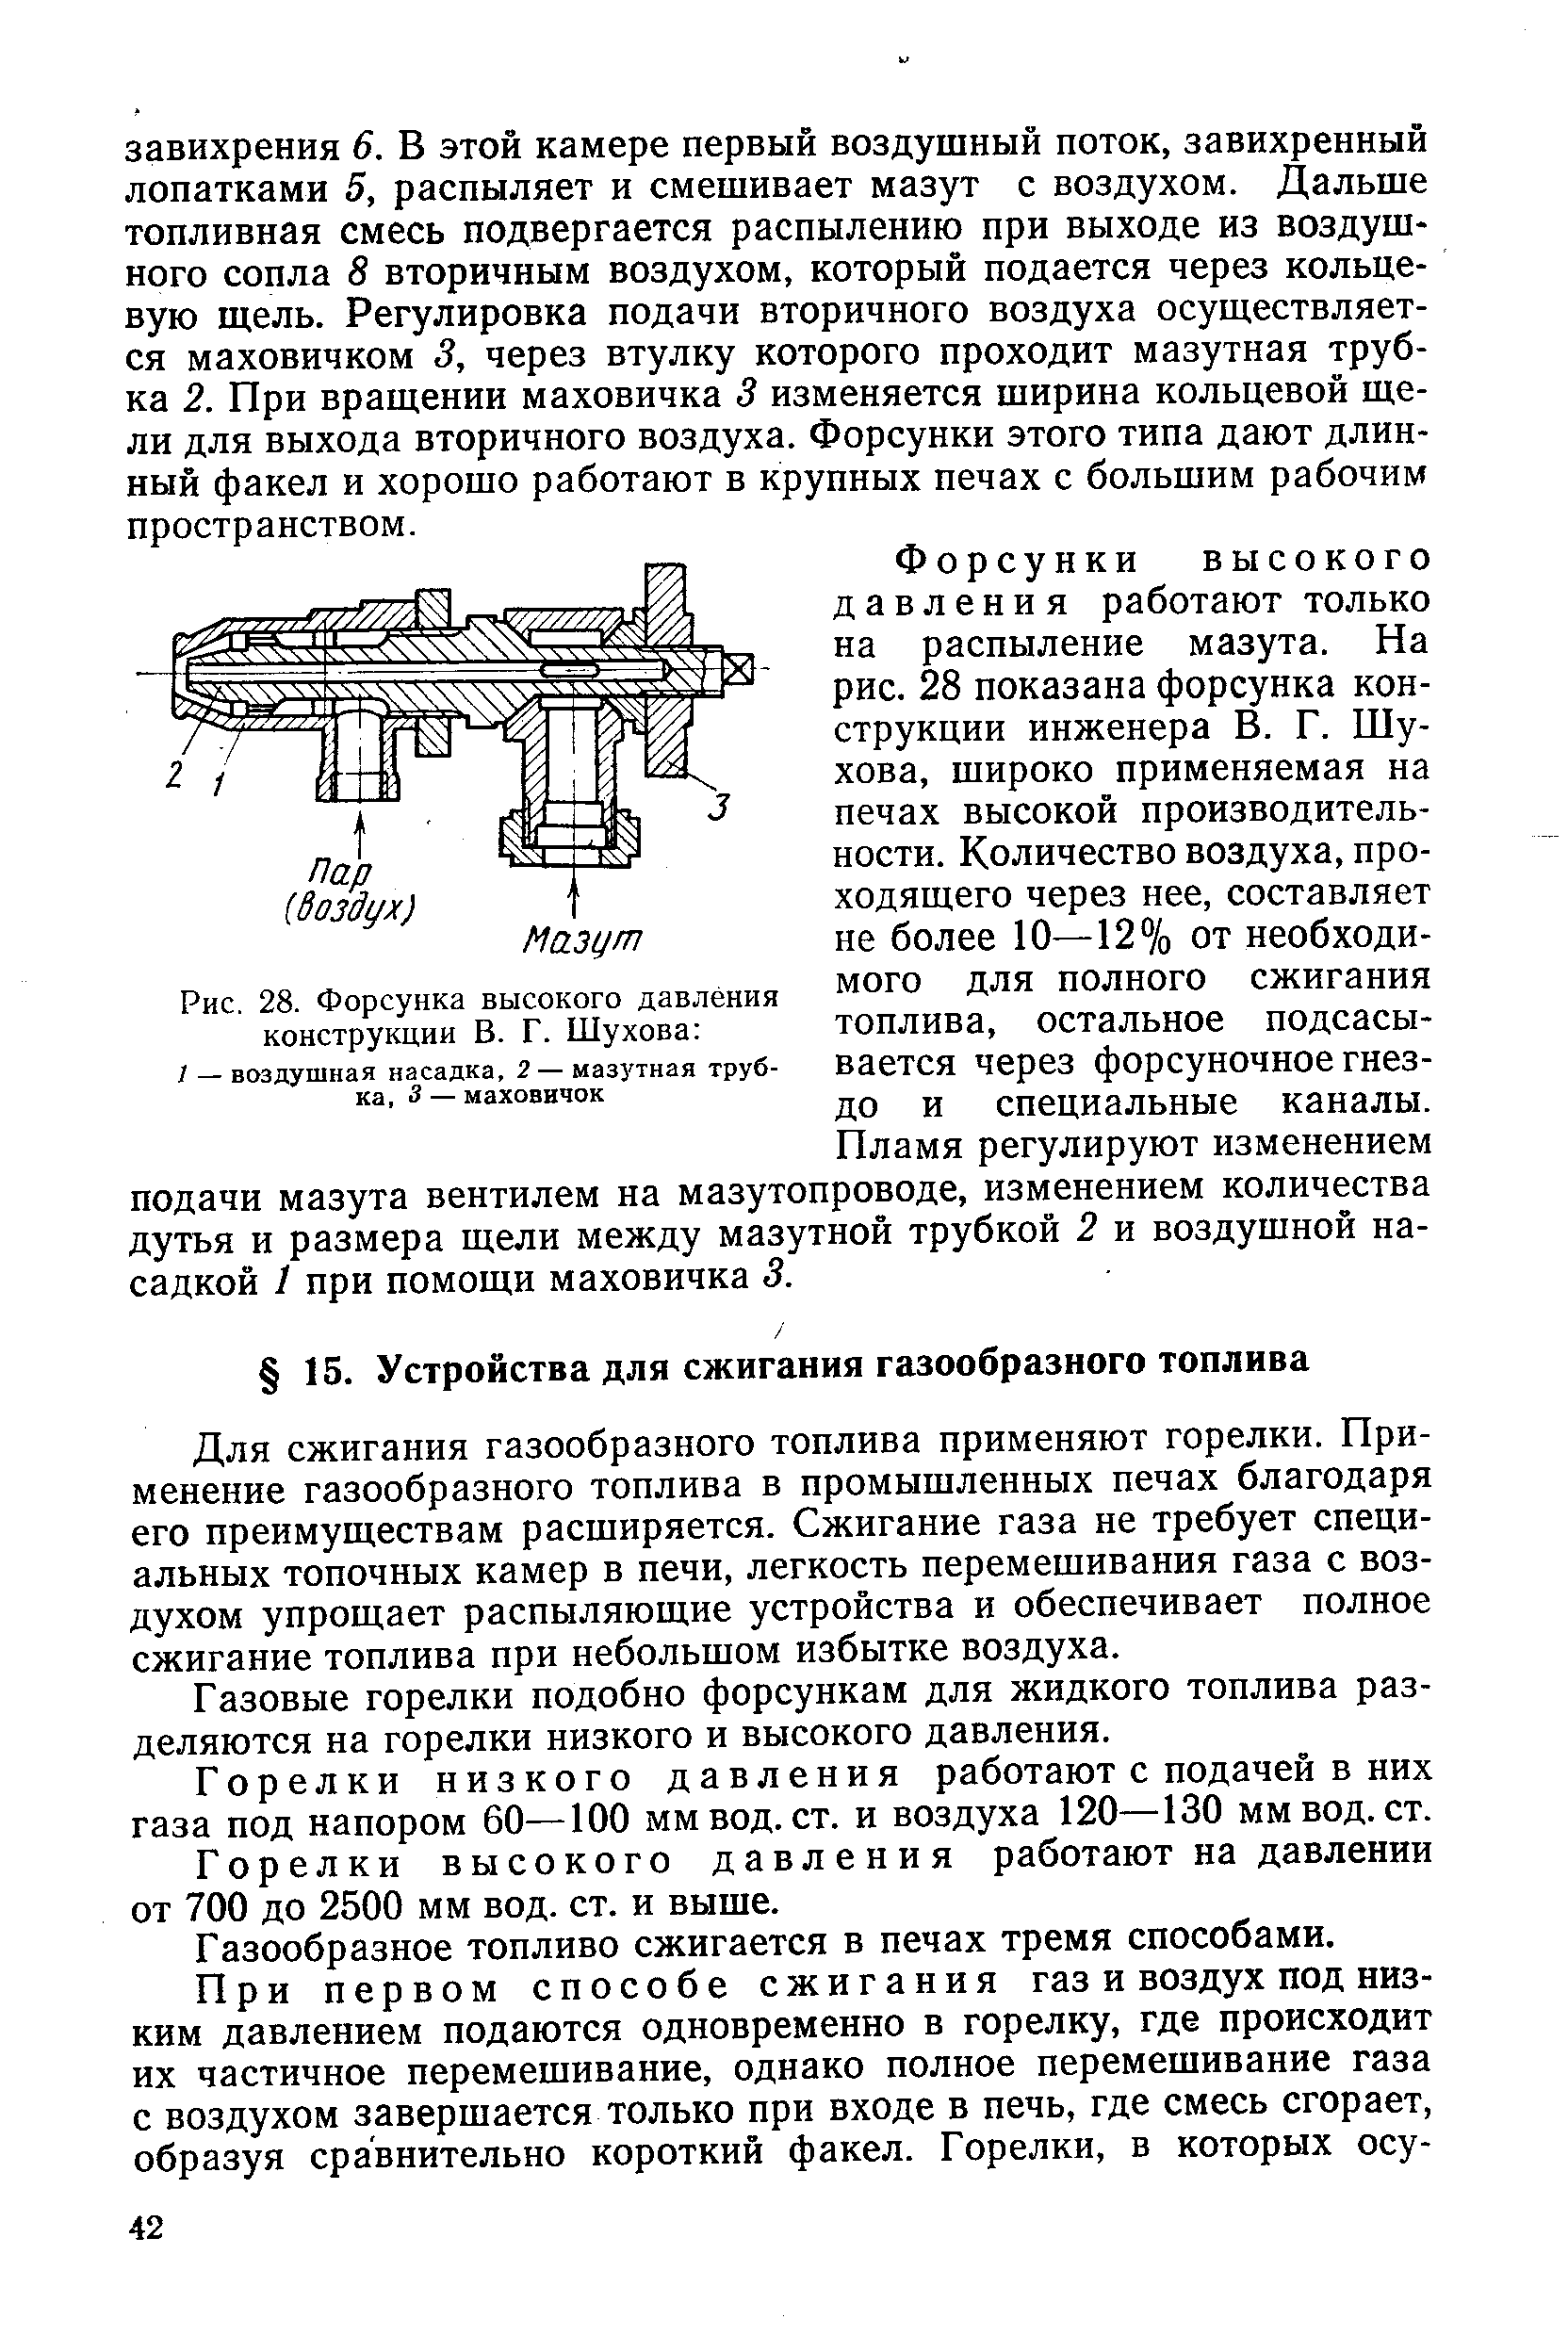 Рис. 28. Форсунка высокого давления конструкции В. Г. Шухова 
